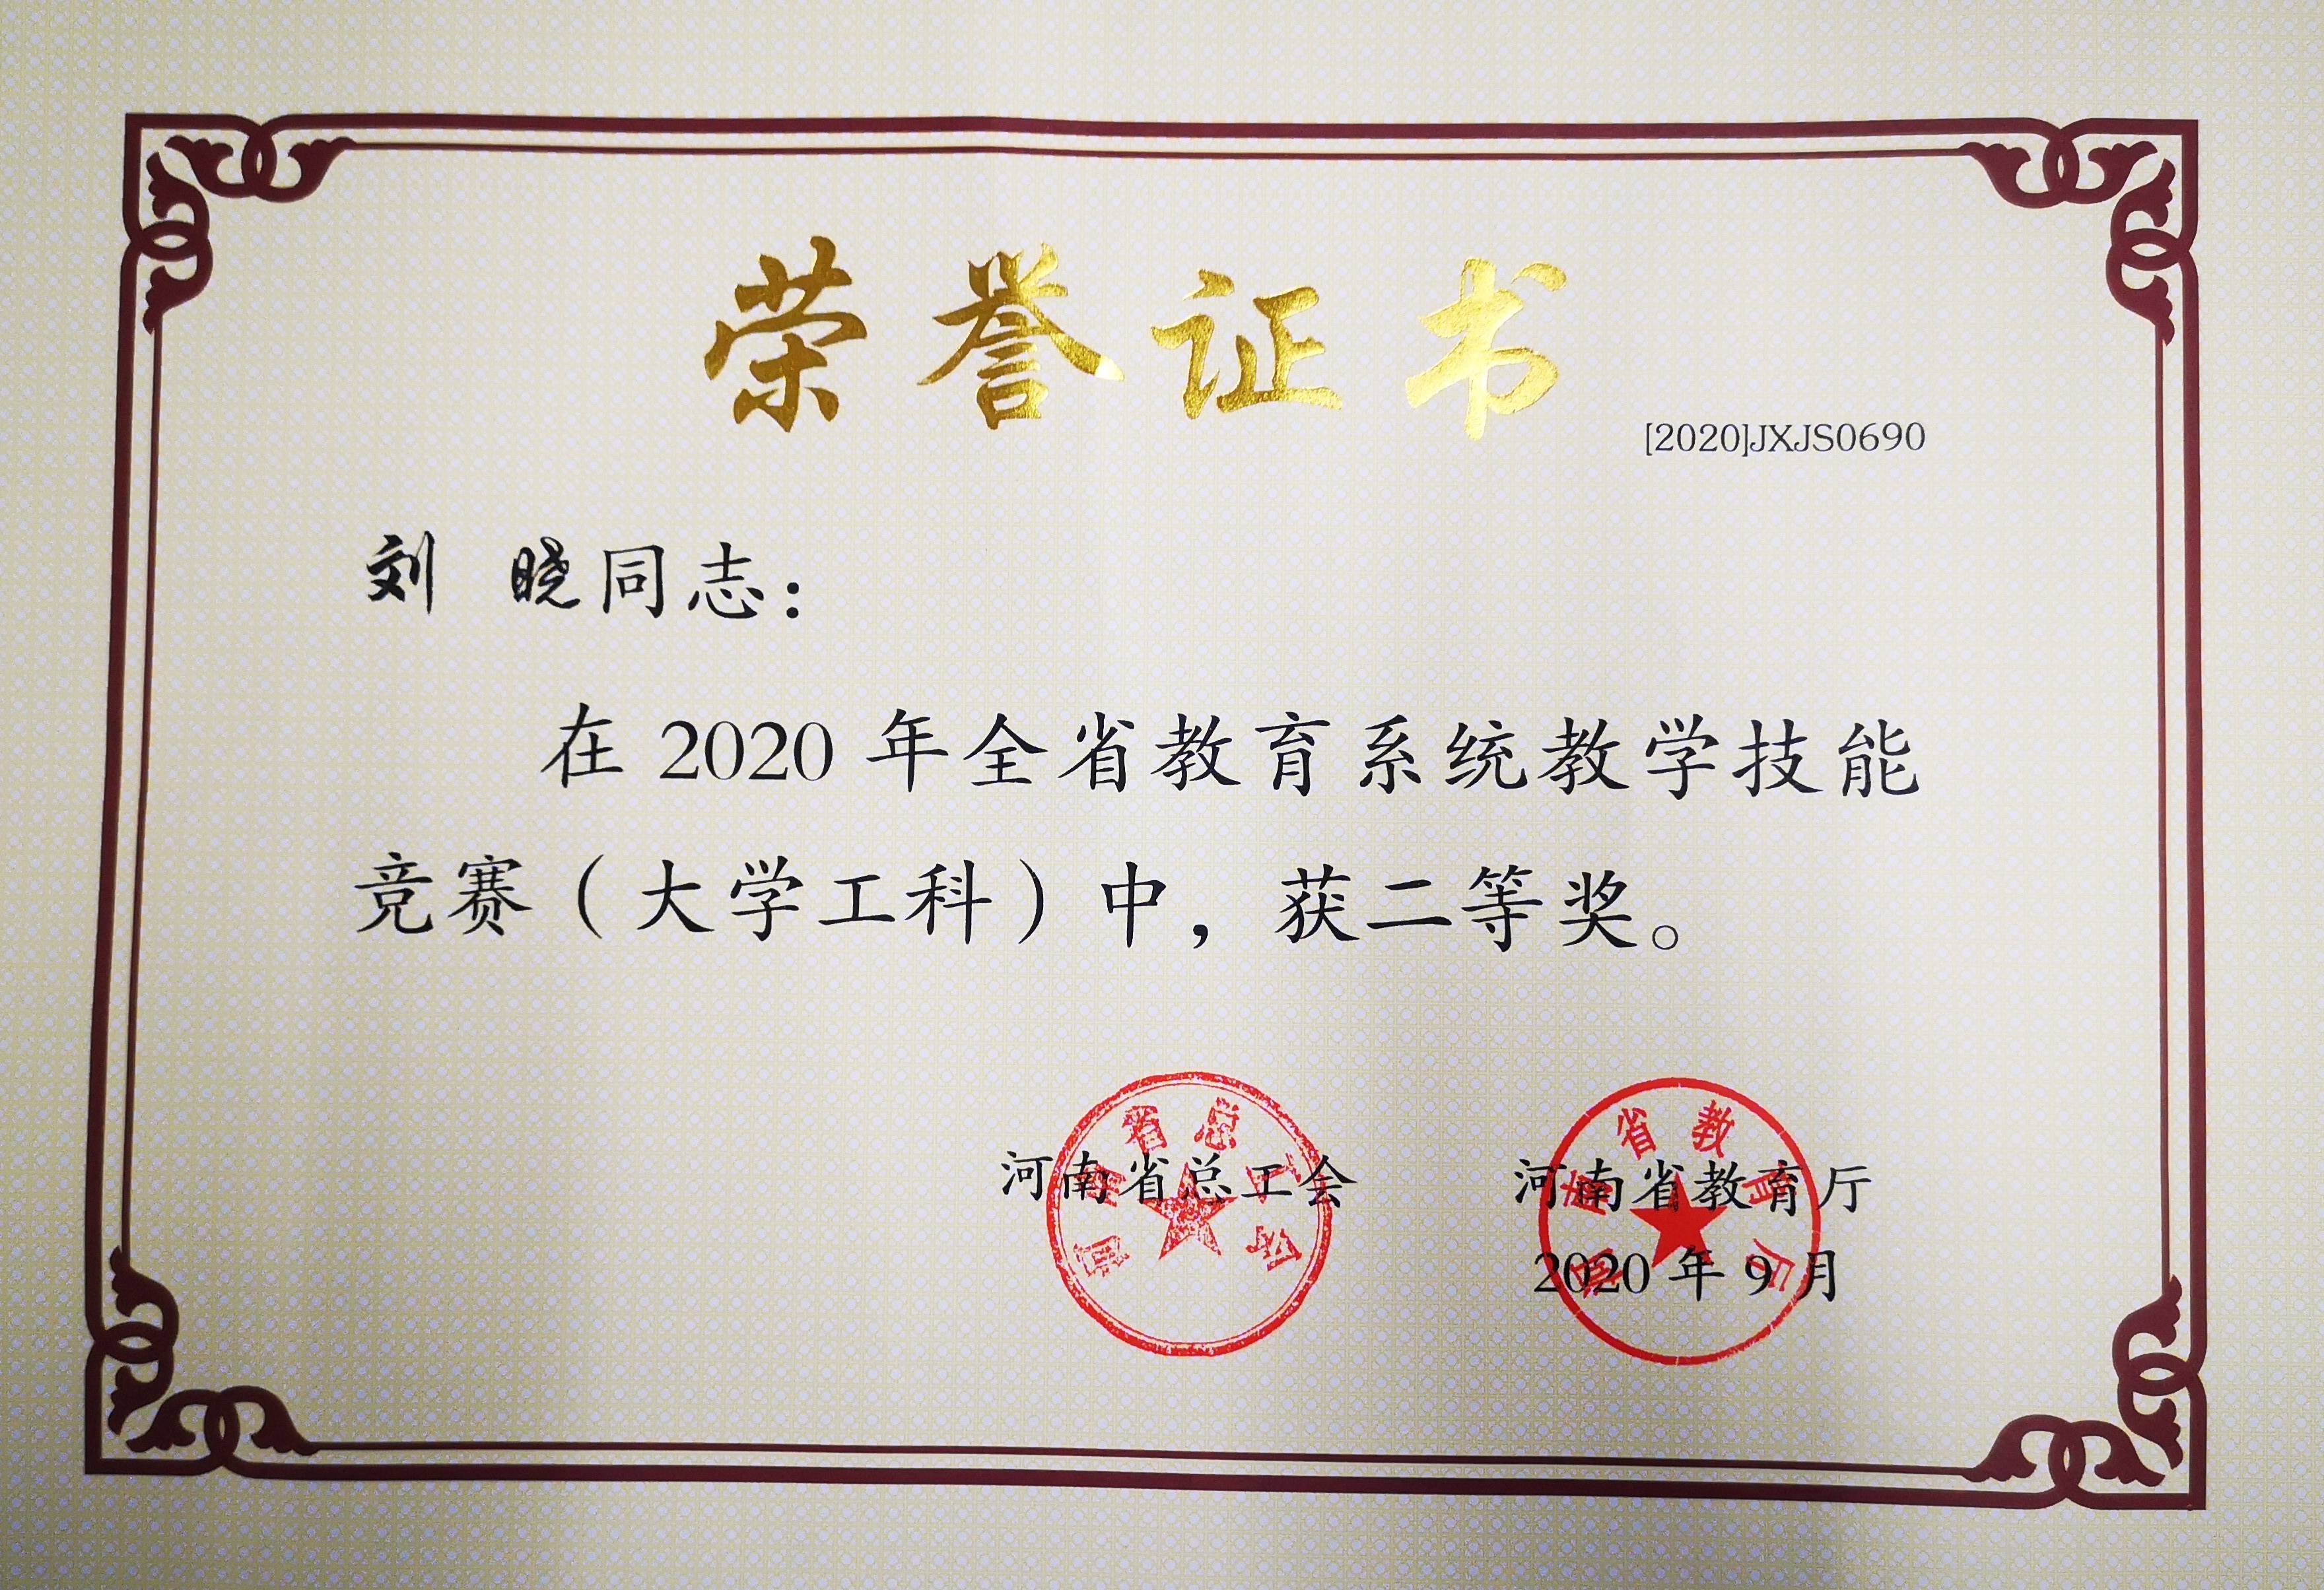 河南省教学技能大赛荣誉证书近日,河南省总工会,河南省教育厅公布了